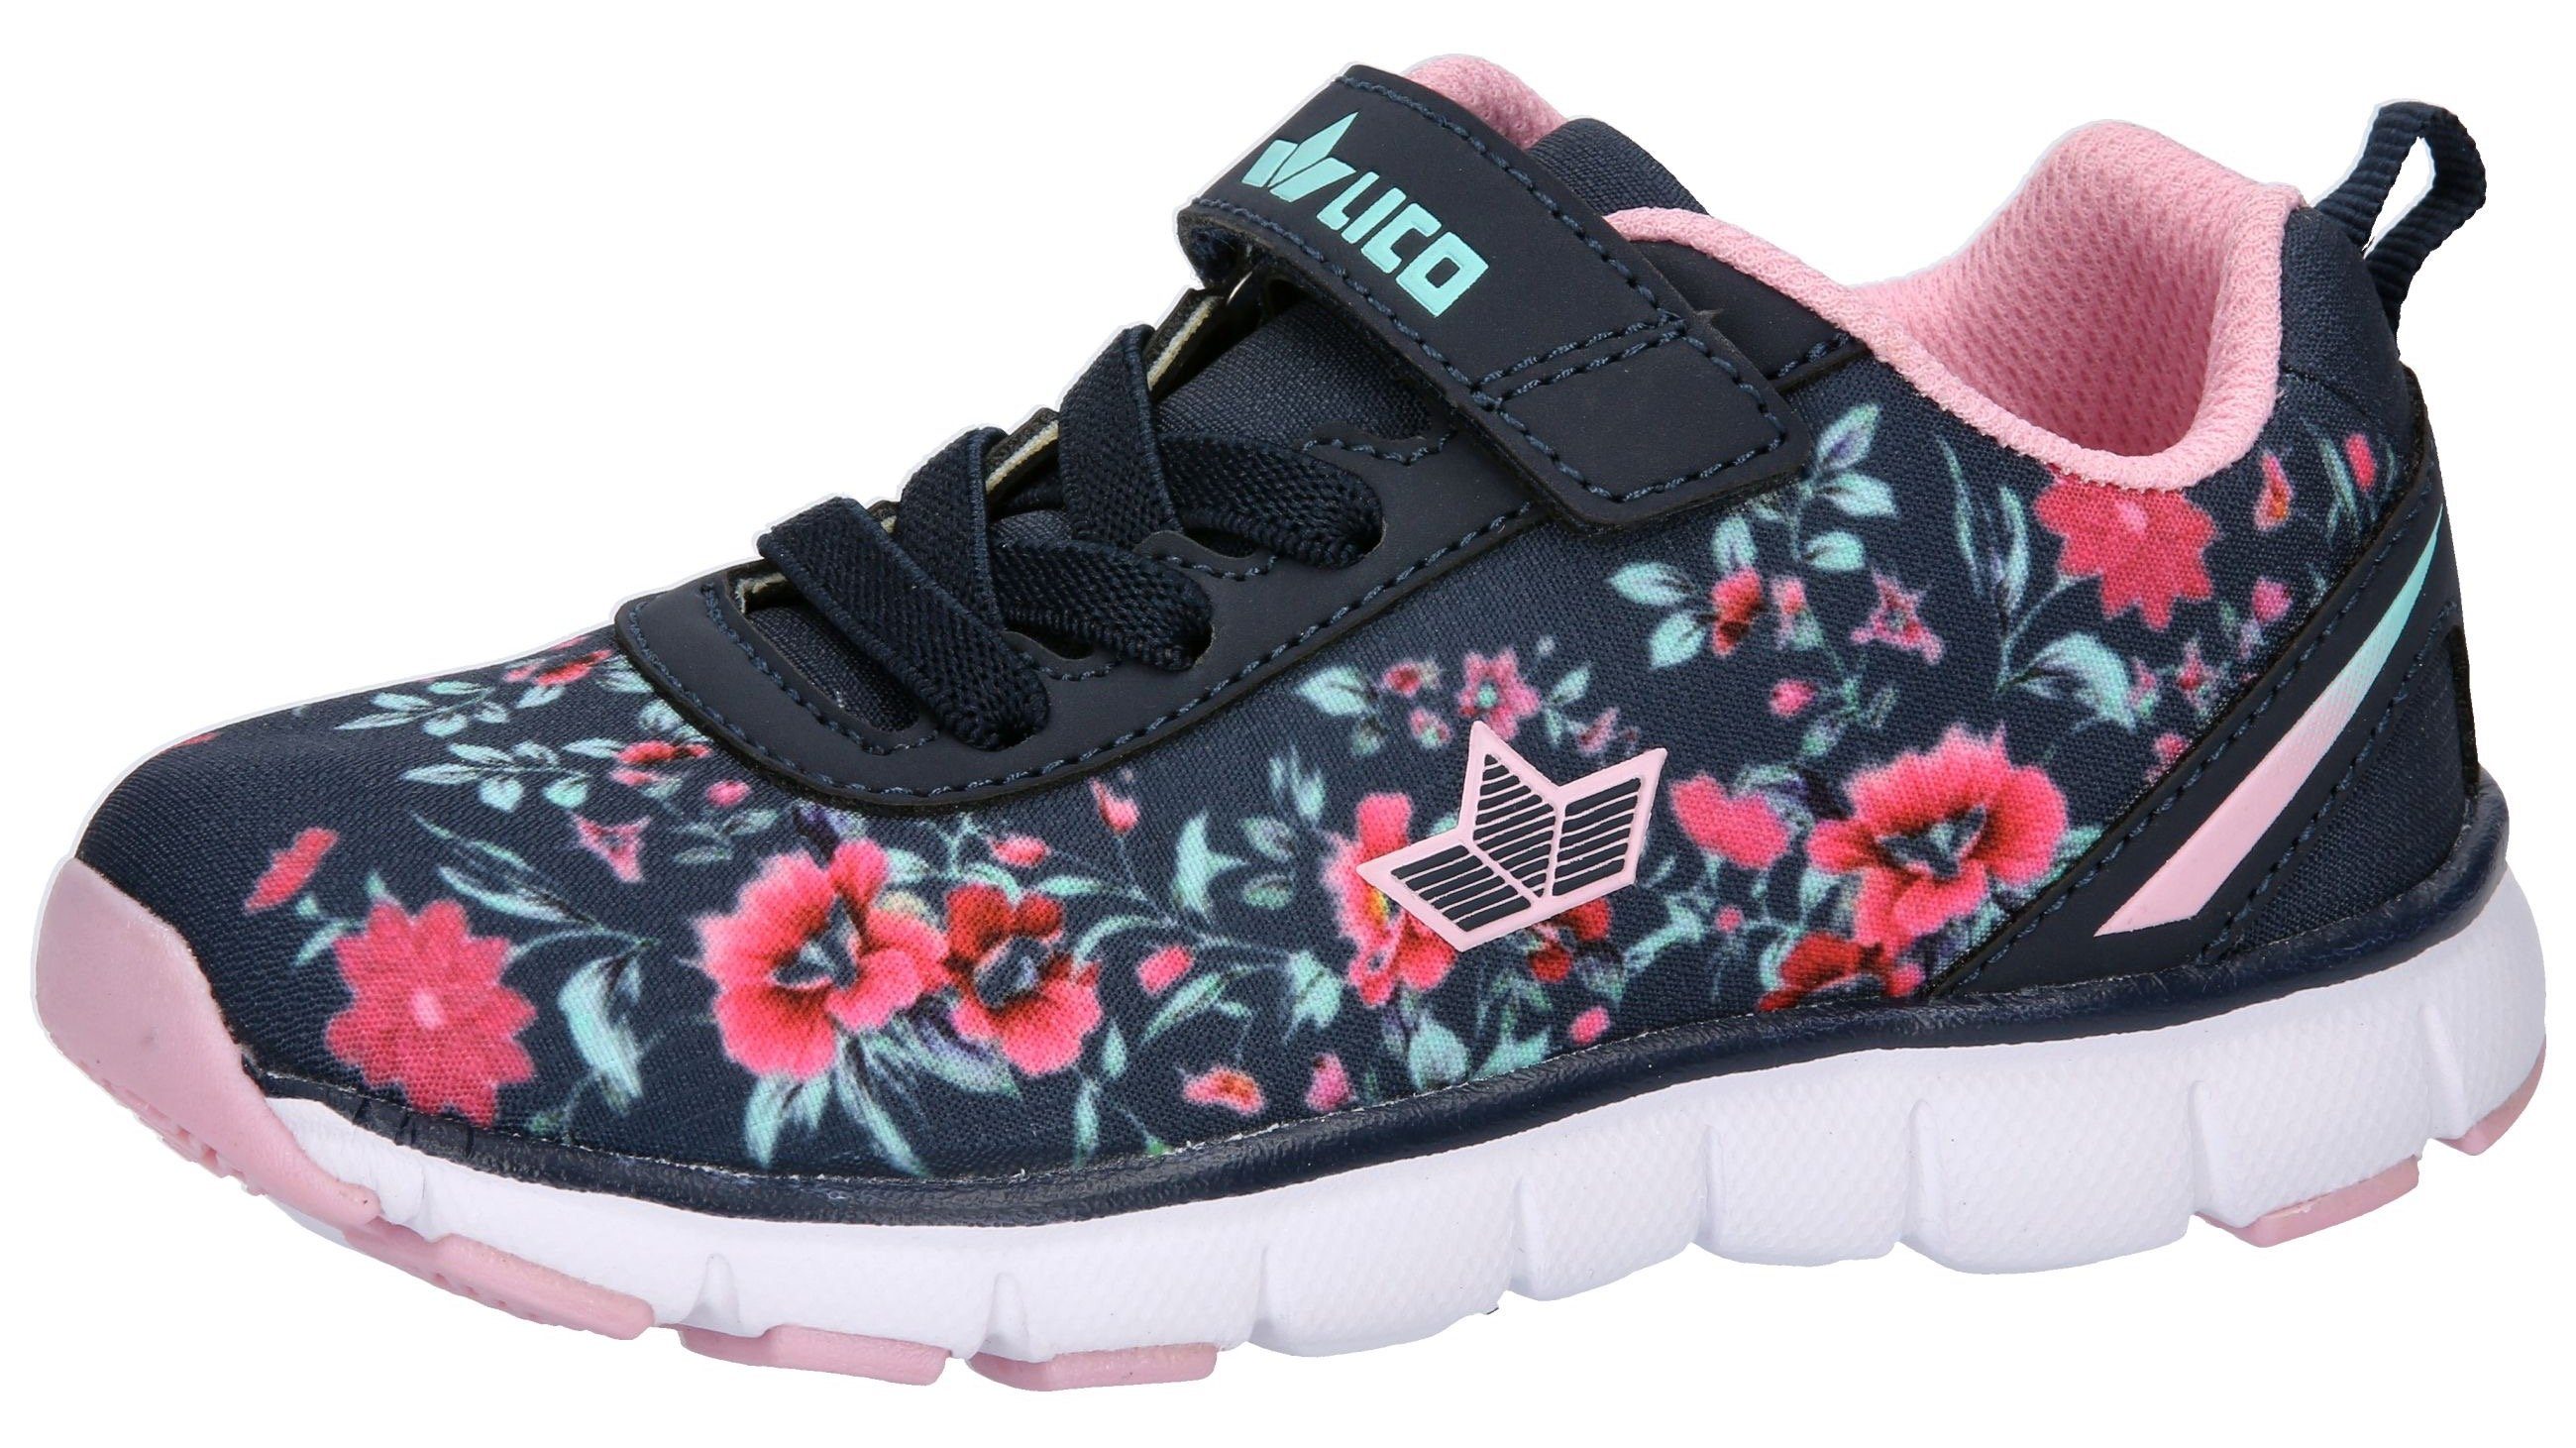 Lico Sunflower VS navy-türkis hübschen mit Blumenmotiven Sneaker WMS